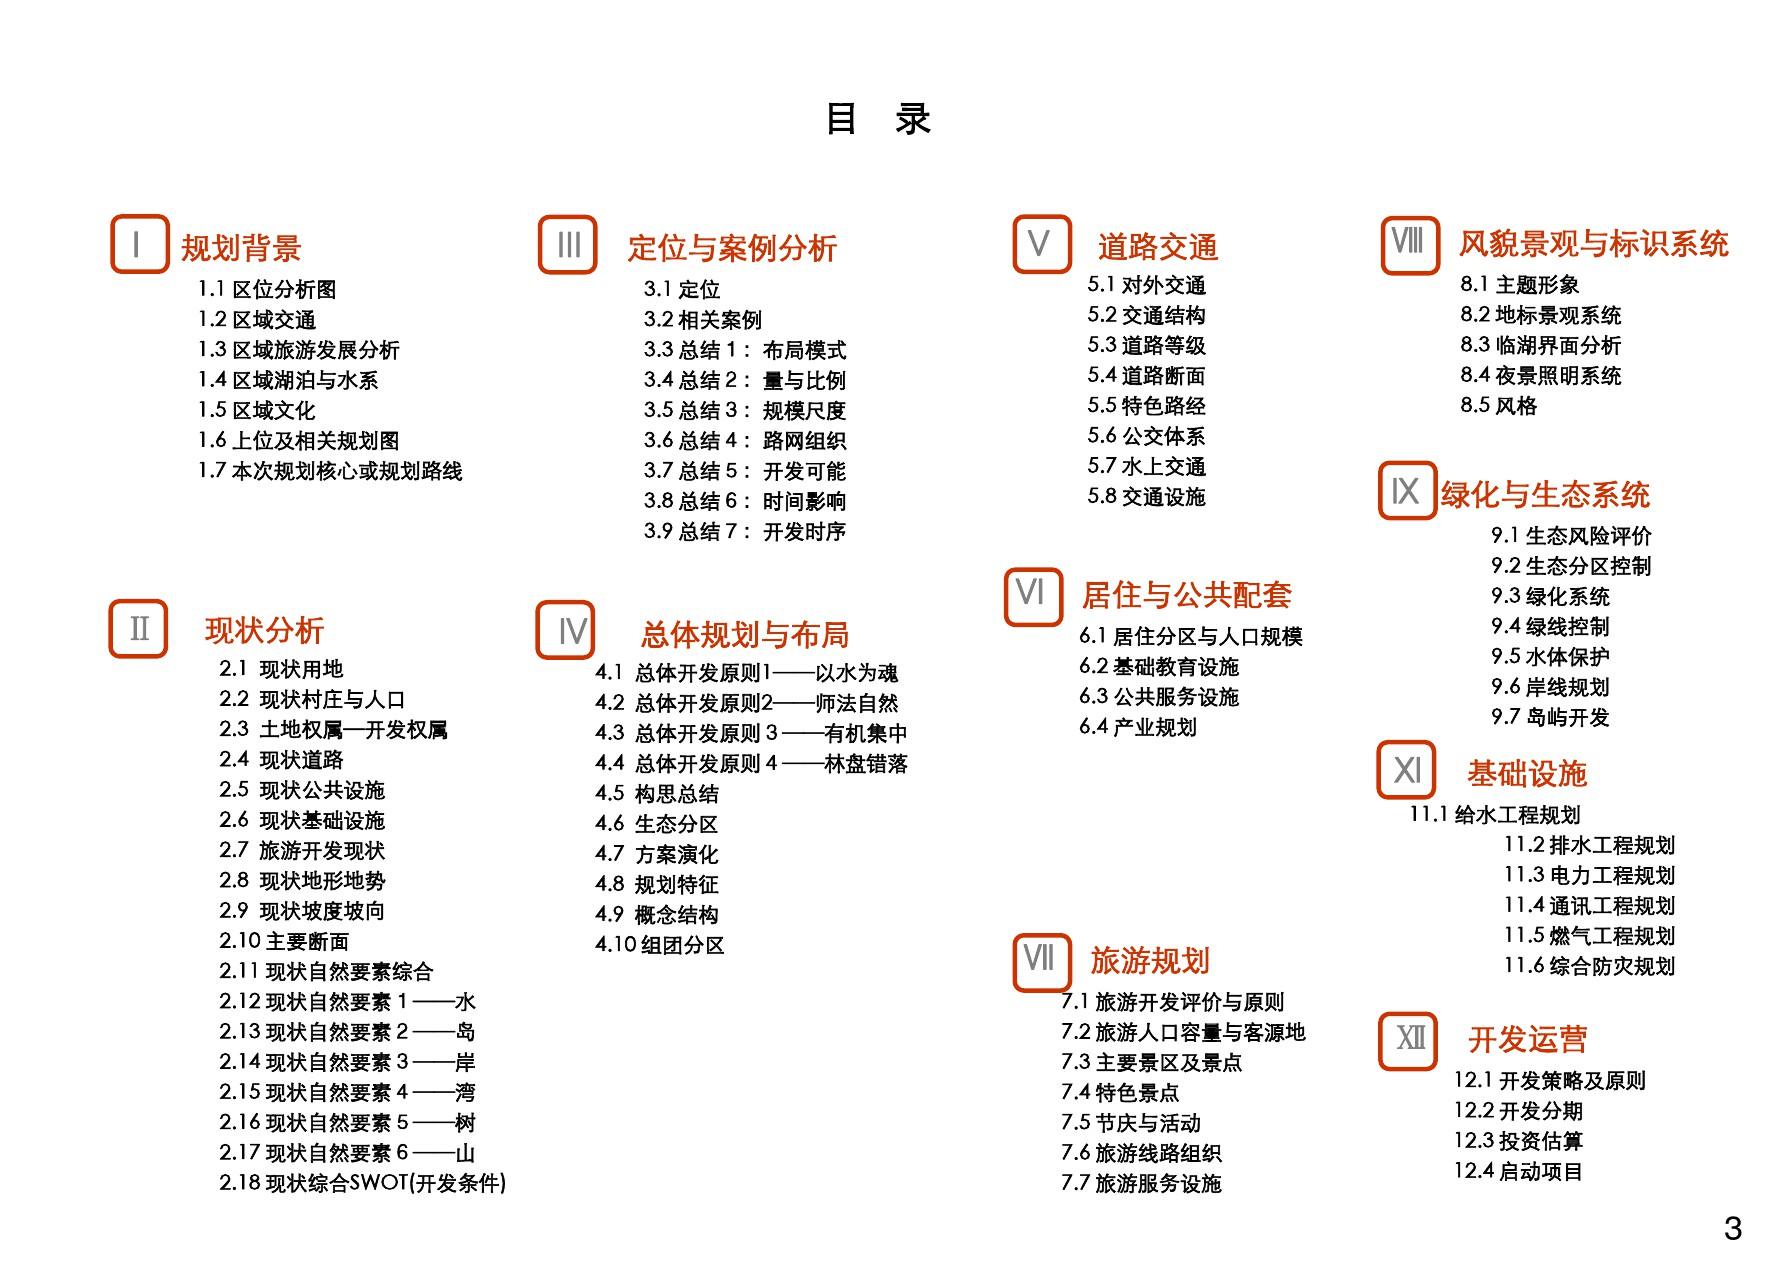 四川三岔湖合作区域规划(上海同济城市规划设计研究院)